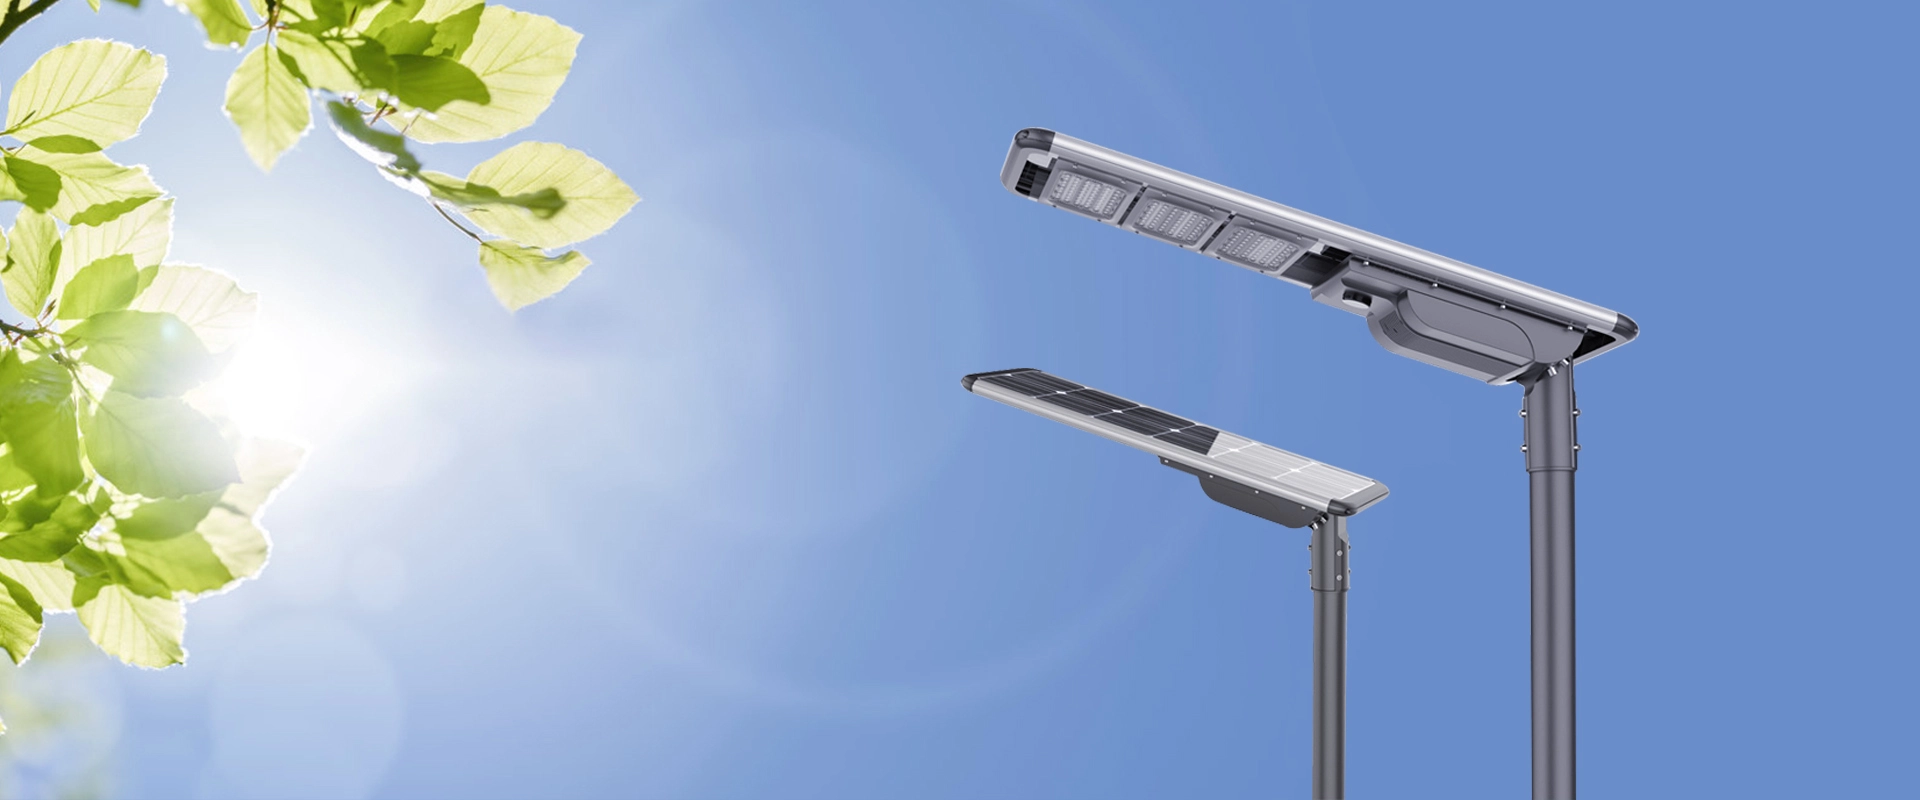 Güneş LED sokak lambası ve enerji depolama ürünleri